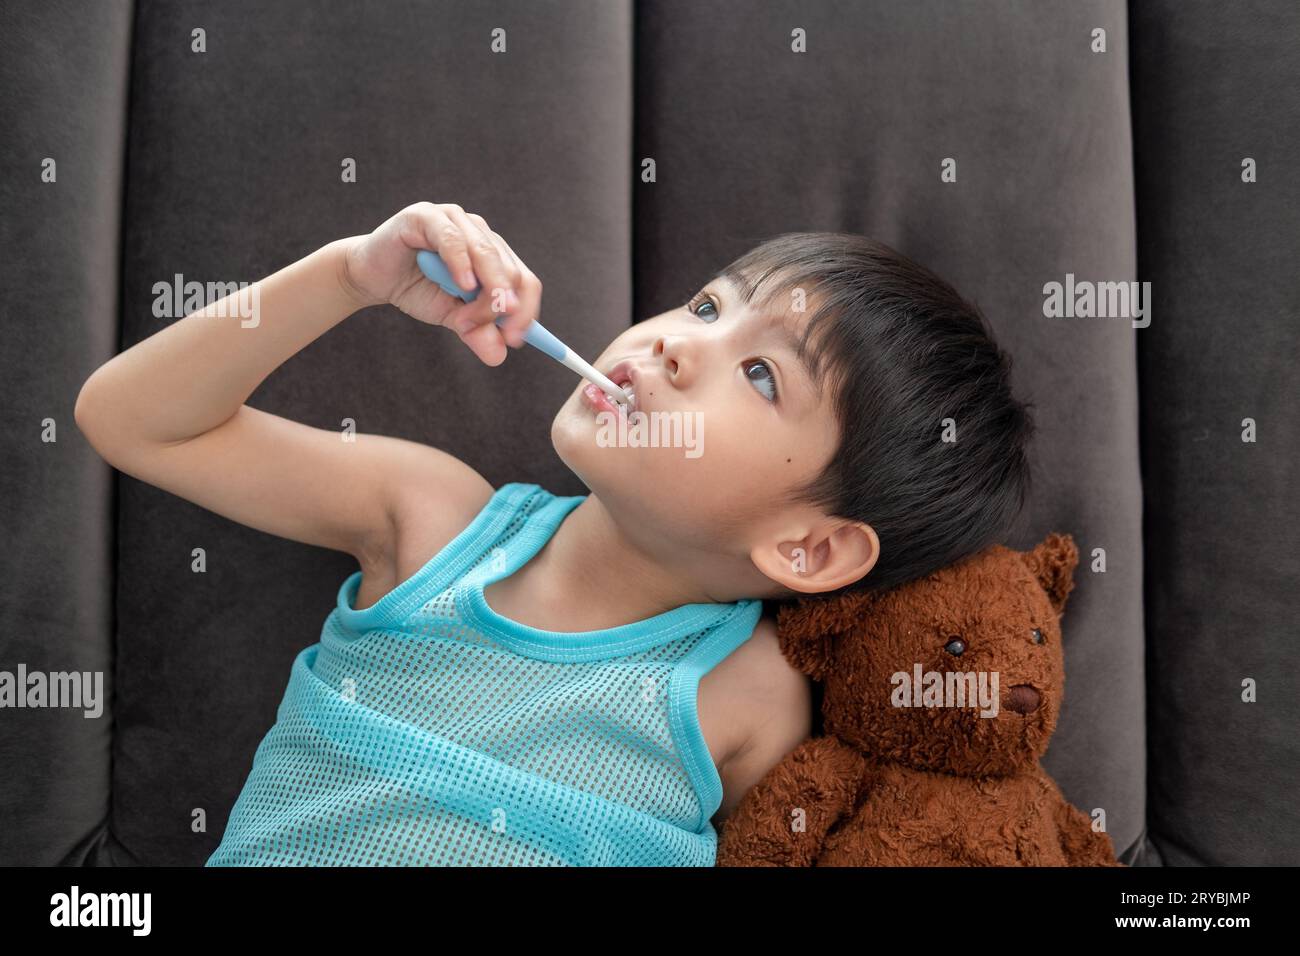 Asiatischer Junge, der seine Zähne im Wohnzimmer putzt Stockfoto